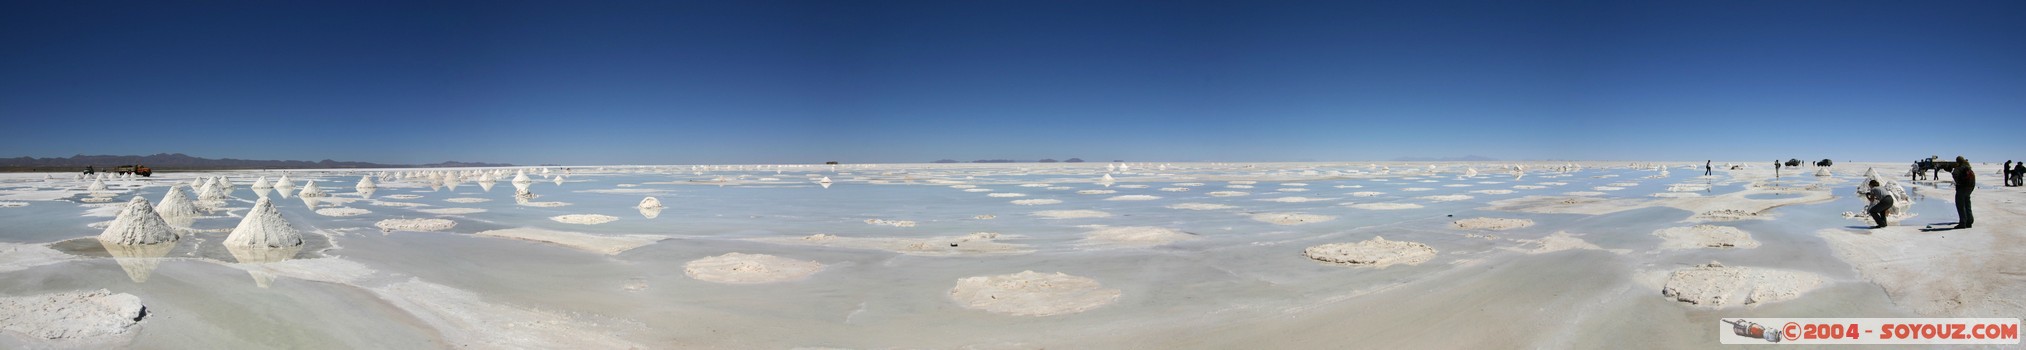 Salar de Uyuni -Recolte du sel - panorama
Mots-clés: panorama